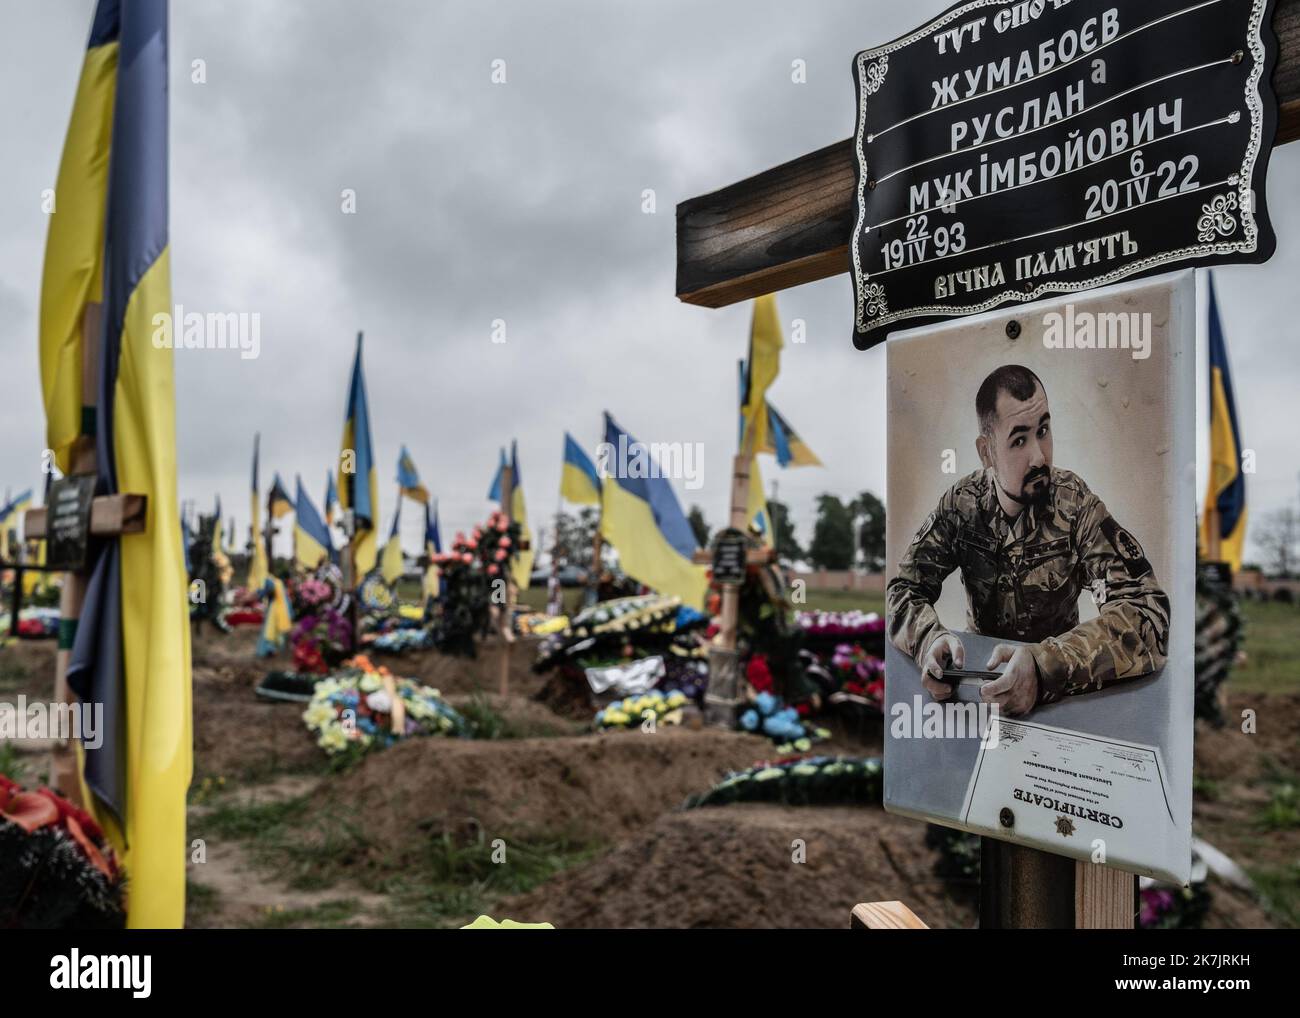 ©Sadak Souici / le Pictorium/MAXPPP - Kharkiv 16/07/2022 Sadak Souici / le Pictorium - 16/7/2022 - Ucraina / Kharkov / Kharkiv - un militaire ukrainien mar lors de l'invasion russe de l'Ucraina, dans la section militaire du cimetiere numero 18 de Kharkiv a Bezlioudivka. Le cimetiere N°18 de Kharkiv a Bezlioudivka qui comprend une section militaire datant d'il y a plusieurs annees, accueille les depuilles des soldats morts depuis le debut de la guerre contre la Russie. Samedi, plusieurs enterremements de soldats y ont eu lieu. / 16/7/2022 - Ucraina / Kharkov / Kharkiv - un serviziuomo ucraino ki Foto Stock